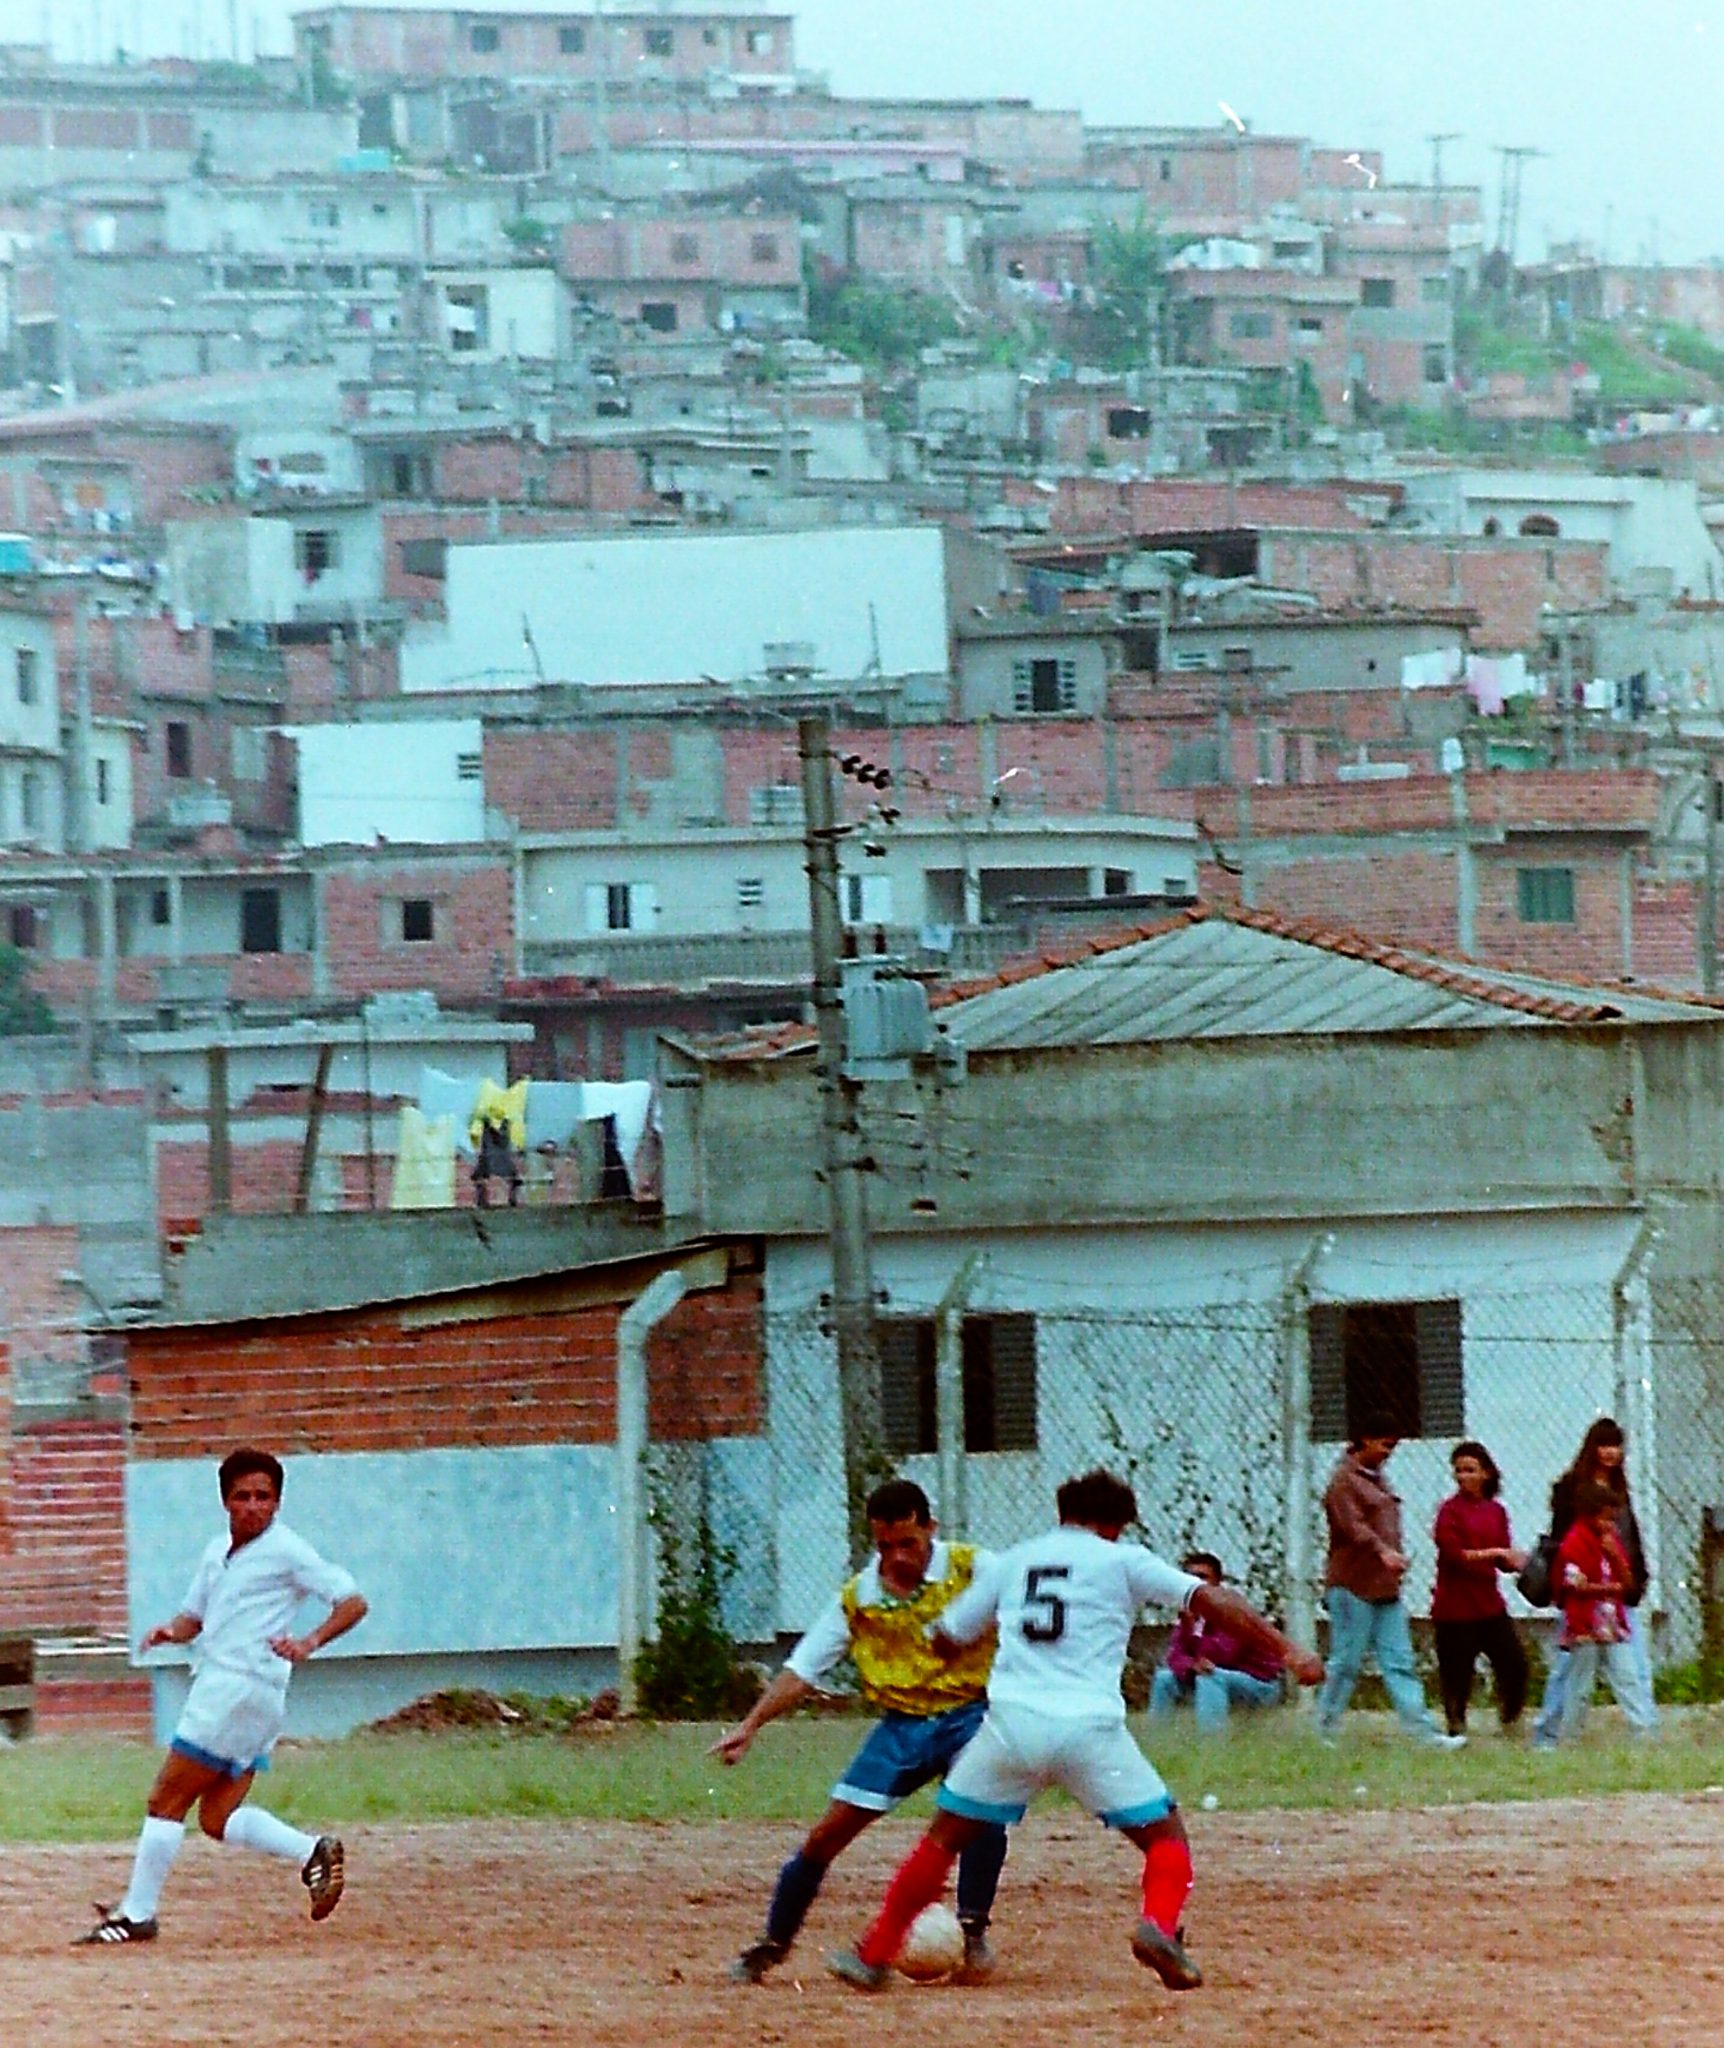 Sao Bernardo Do Campo, Sau Paulo, Brasile, 1996